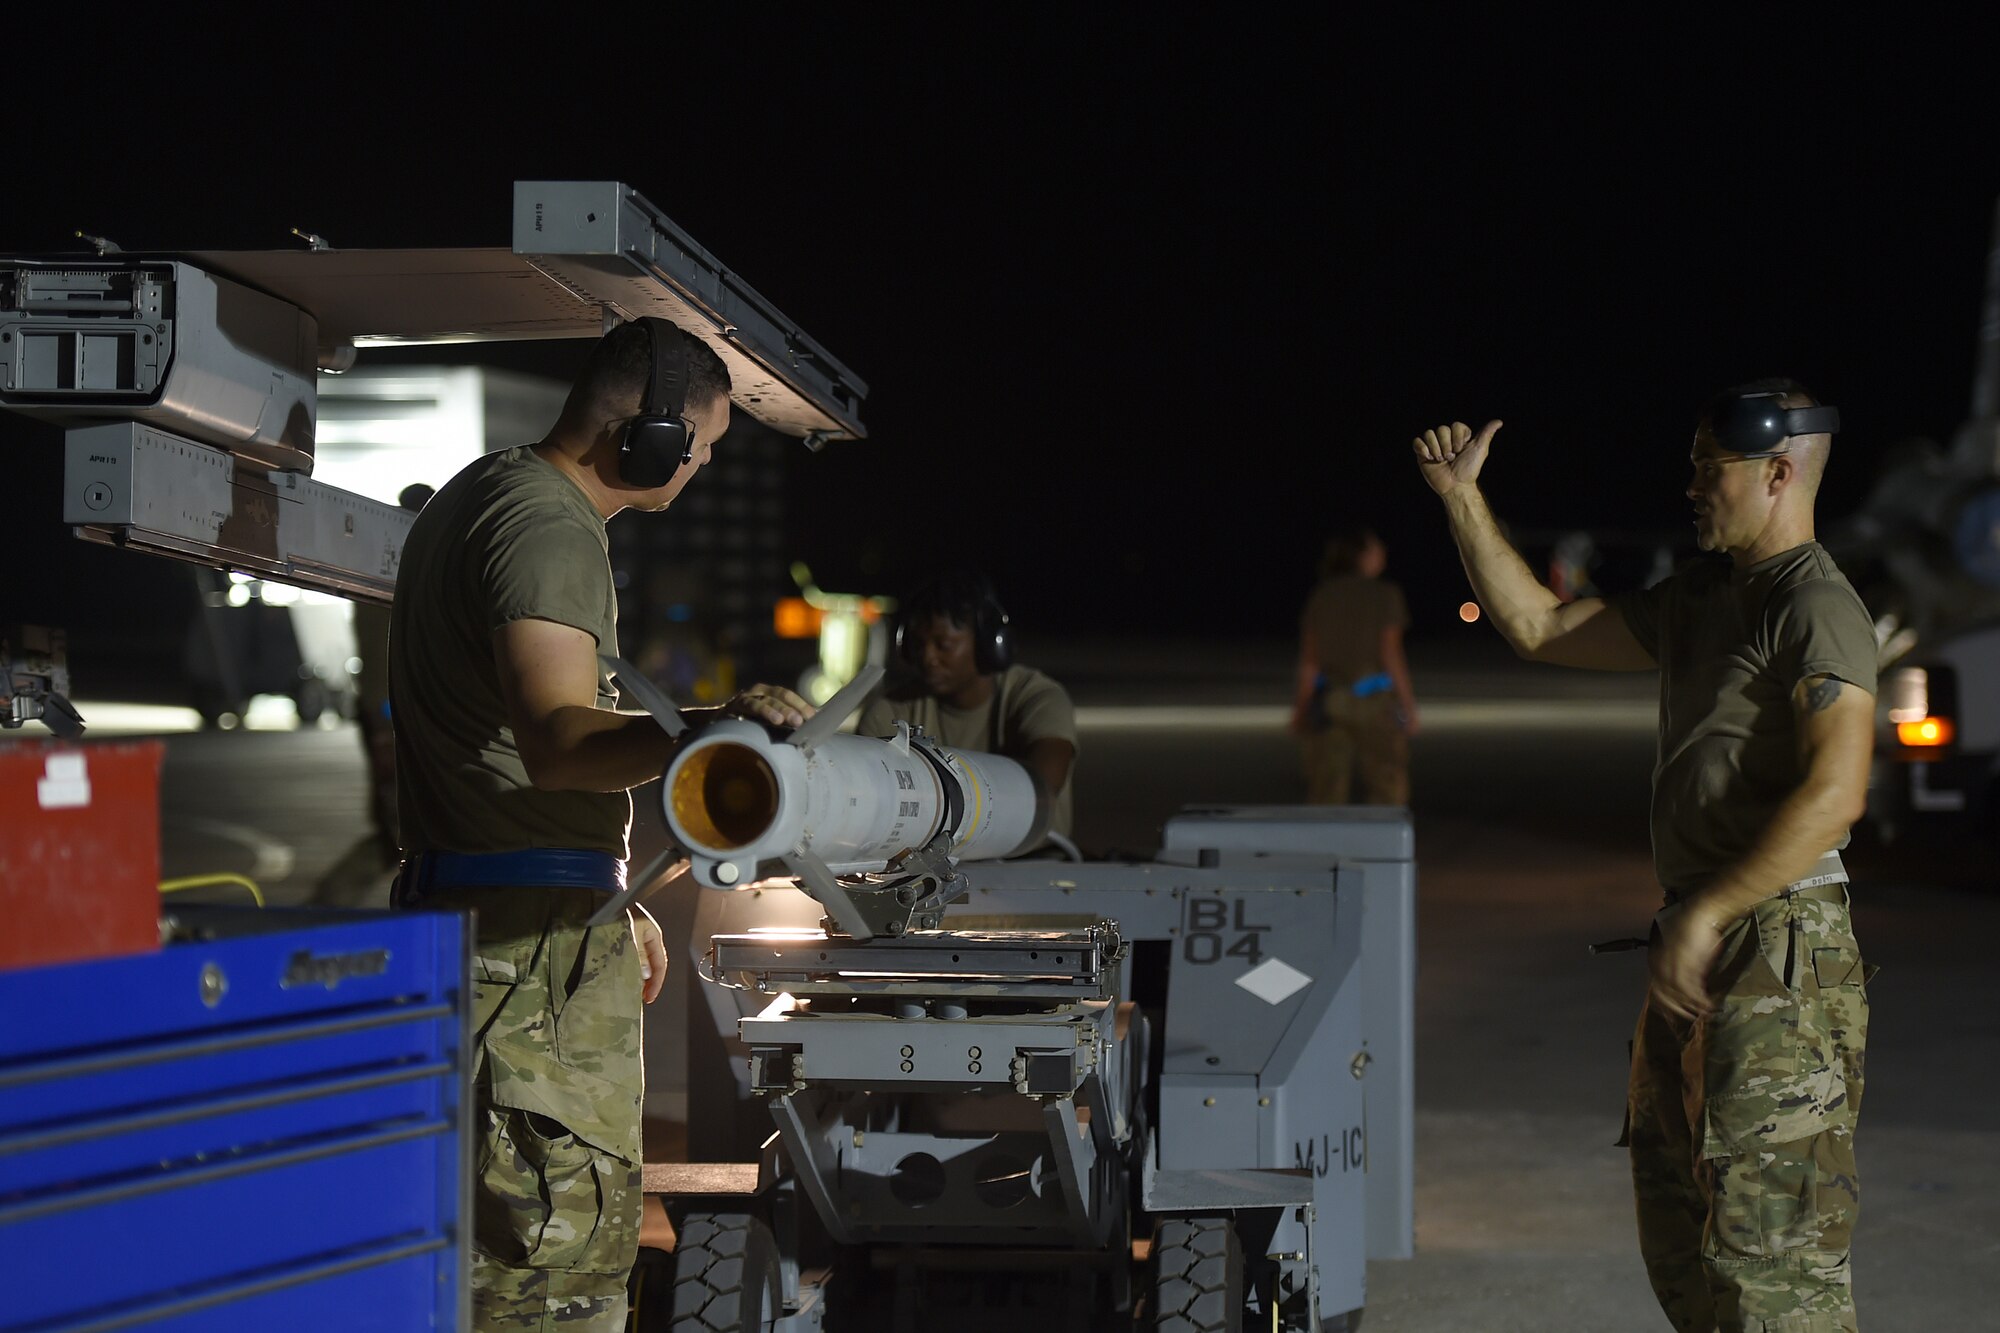 Airmen work on the flightline at night